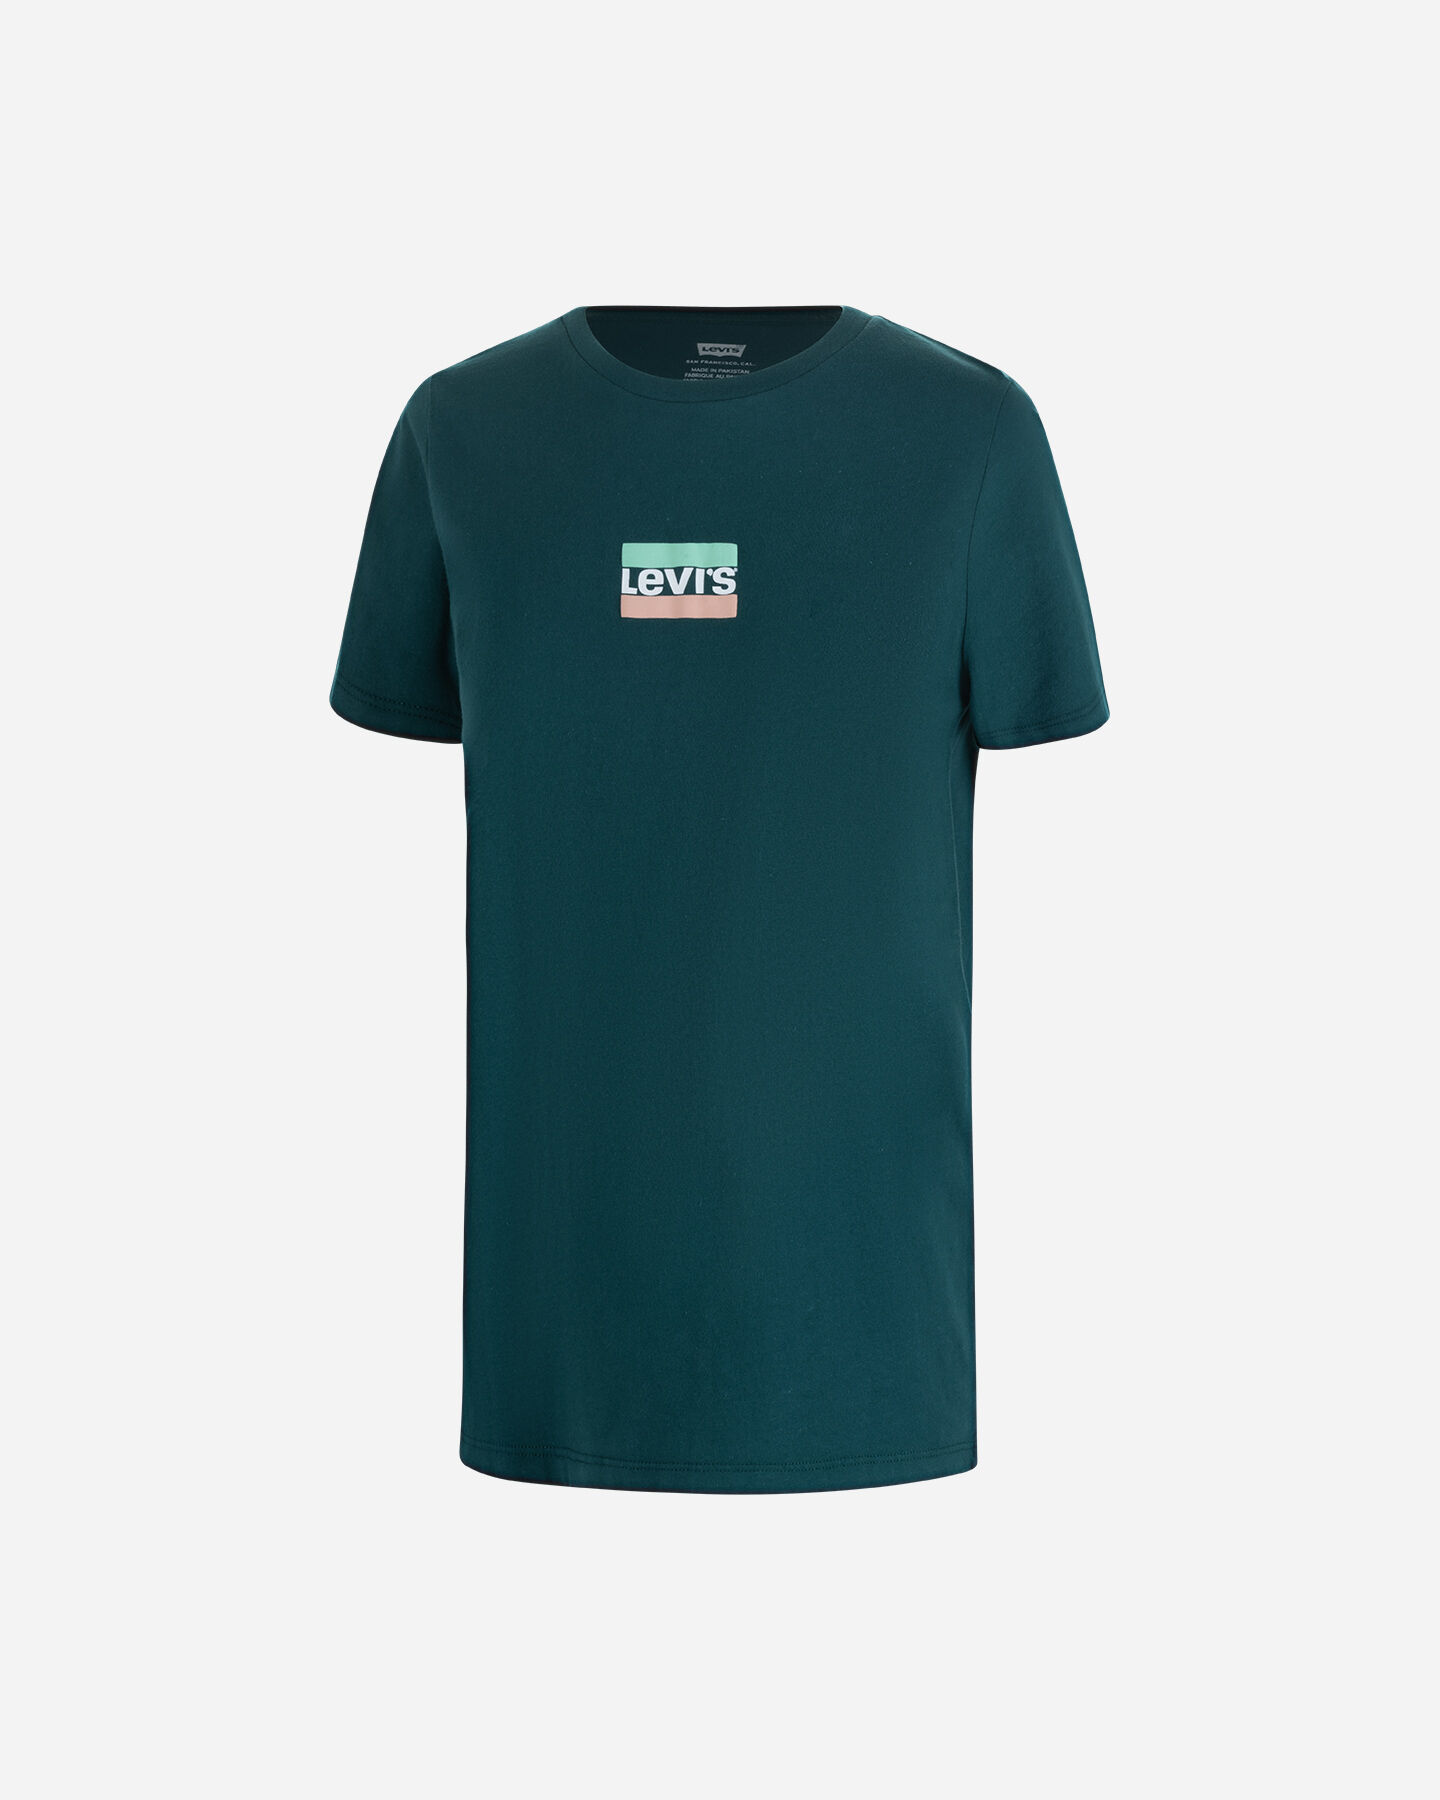  T-Shirt LEVI'S BLOCCHETTO LOGO W S4119861|2028|L scatto 0